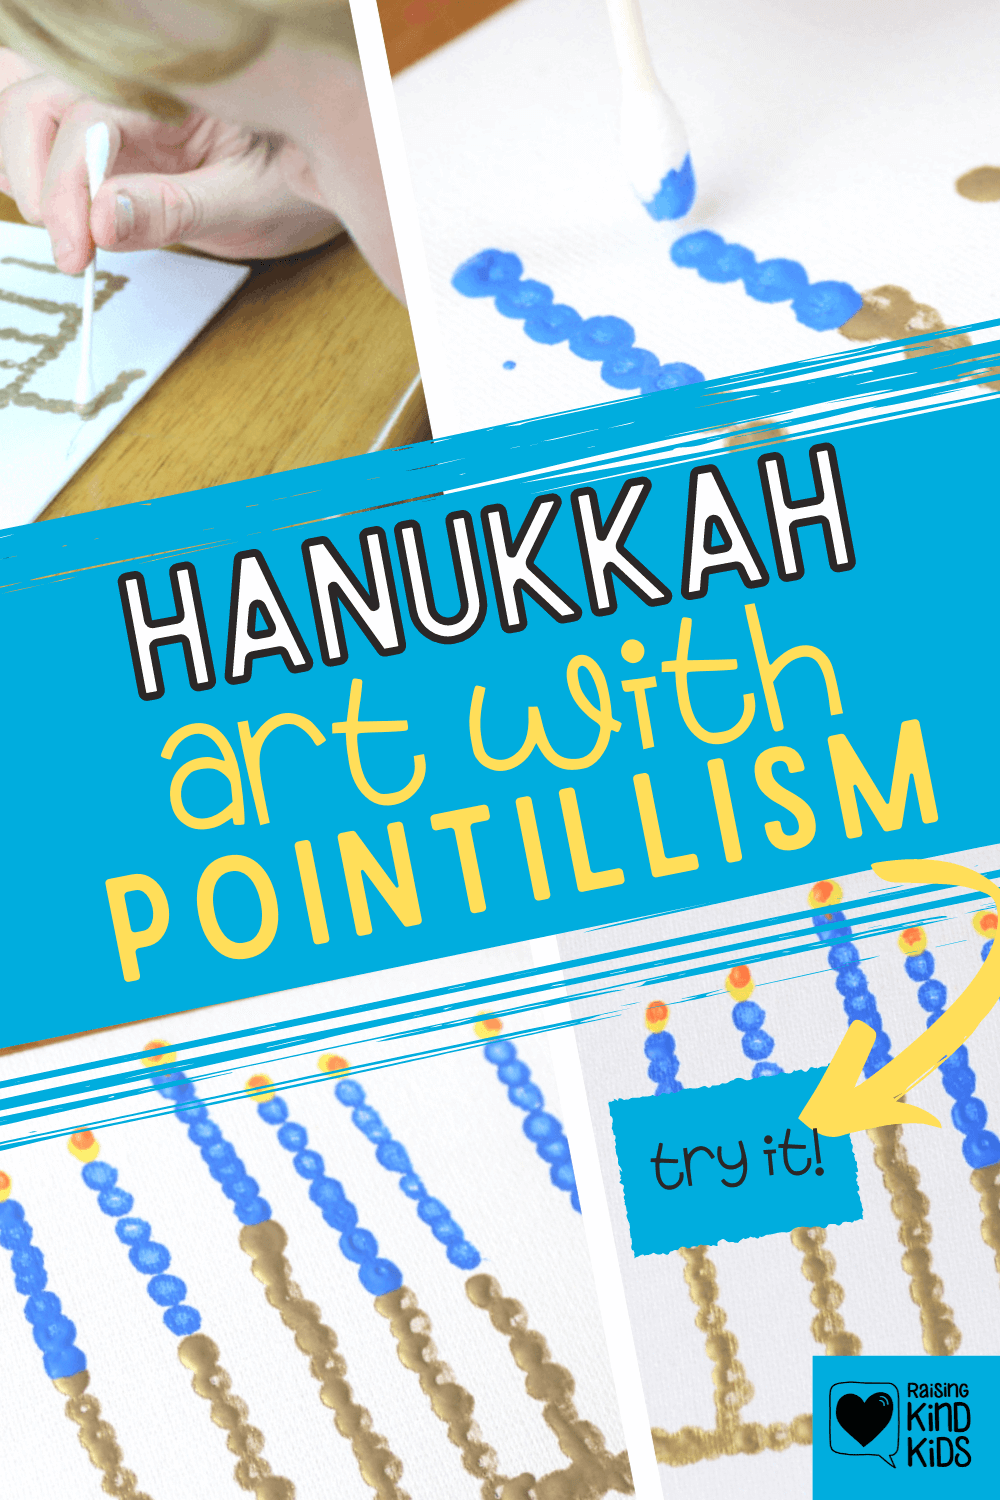 Celebrate Hanukkah with this Hanukkah art project using dots to create a menorah. #Hanukkah #Chanukkah #Hanukkahcraft #Hanukkahart #Hanukkahactivities #Hanukkahactivitiesforkids #interfaith #Jewishcrafts #Jewishprojects #Jewishactivities